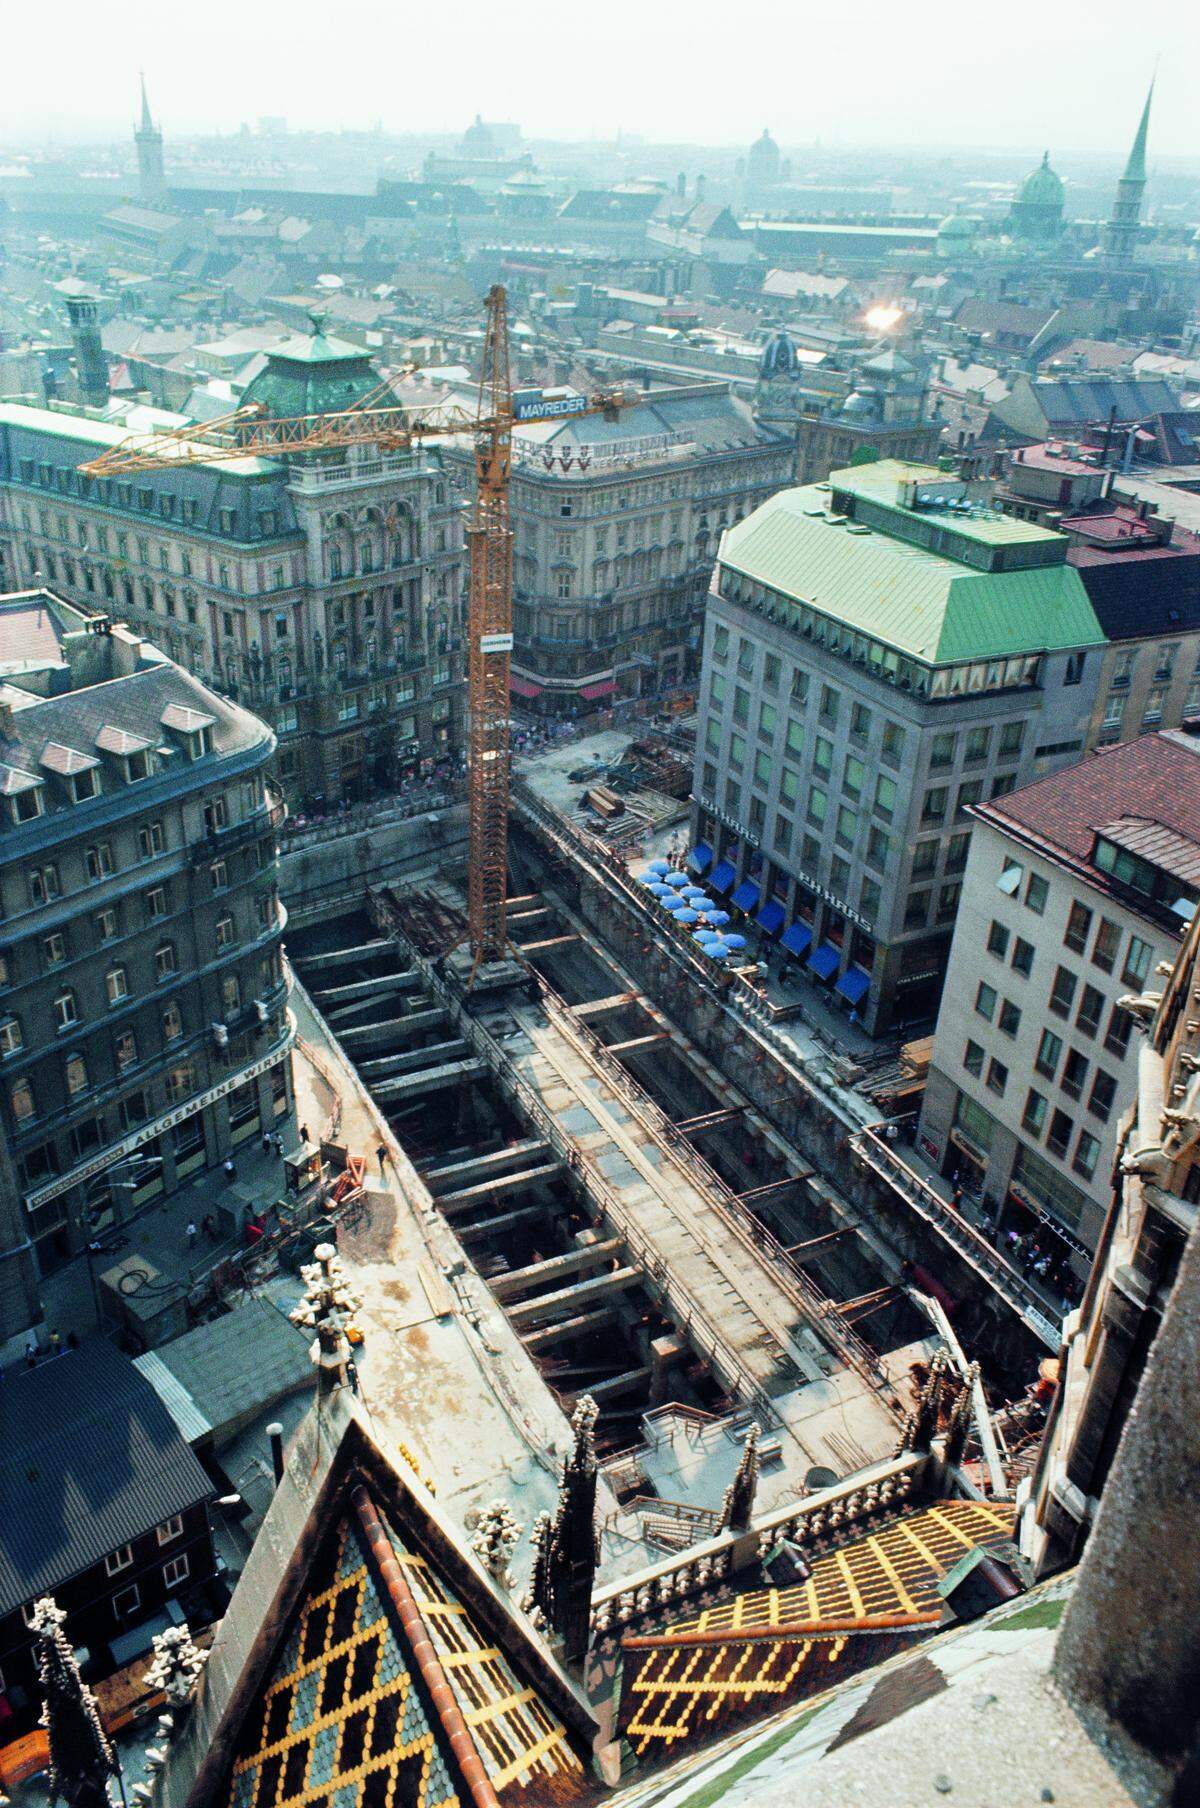 Mit dem Bau der U-Bahn verbunden ist auch die Entstehung der ersten Fußgängerzonen in Wien. Stephansplatz und Kärntner Straße wären ohne den Bau der U1 wohl nicht so verkehrsberuhigt worden.